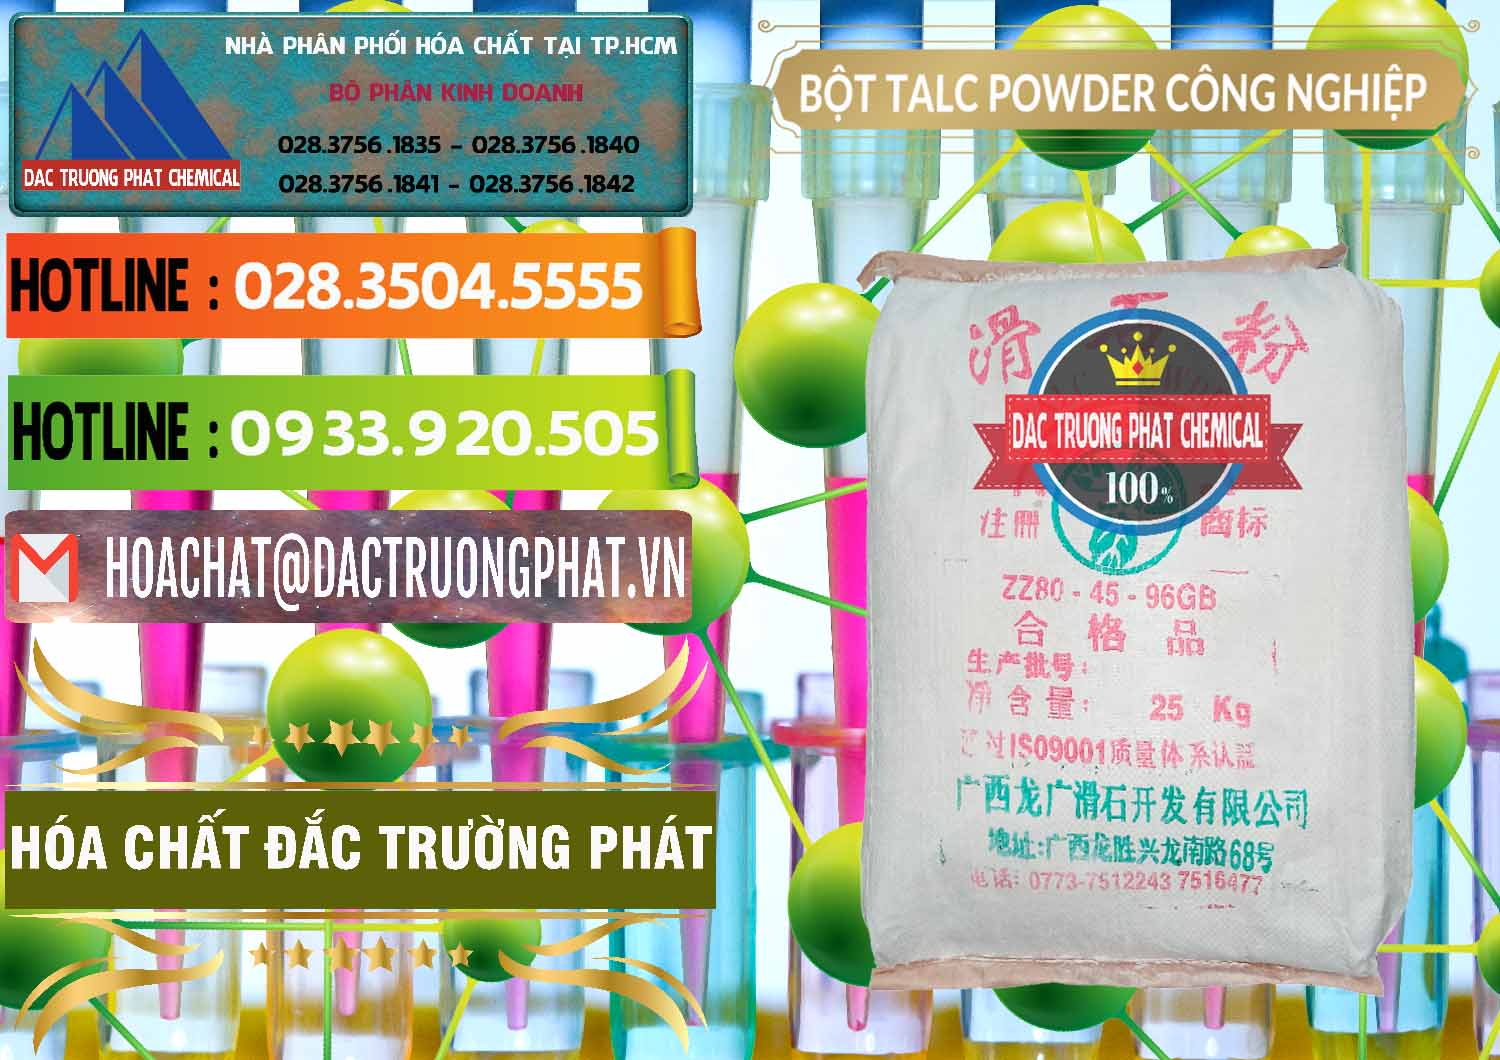 Chuyên kinh doanh - bán Bột Talc Powder Công Nghiệp Trung Quốc China - 0037 - Đơn vị cung cấp và phân phối hóa chất tại TP.HCM - cungcaphoachat.com.vn